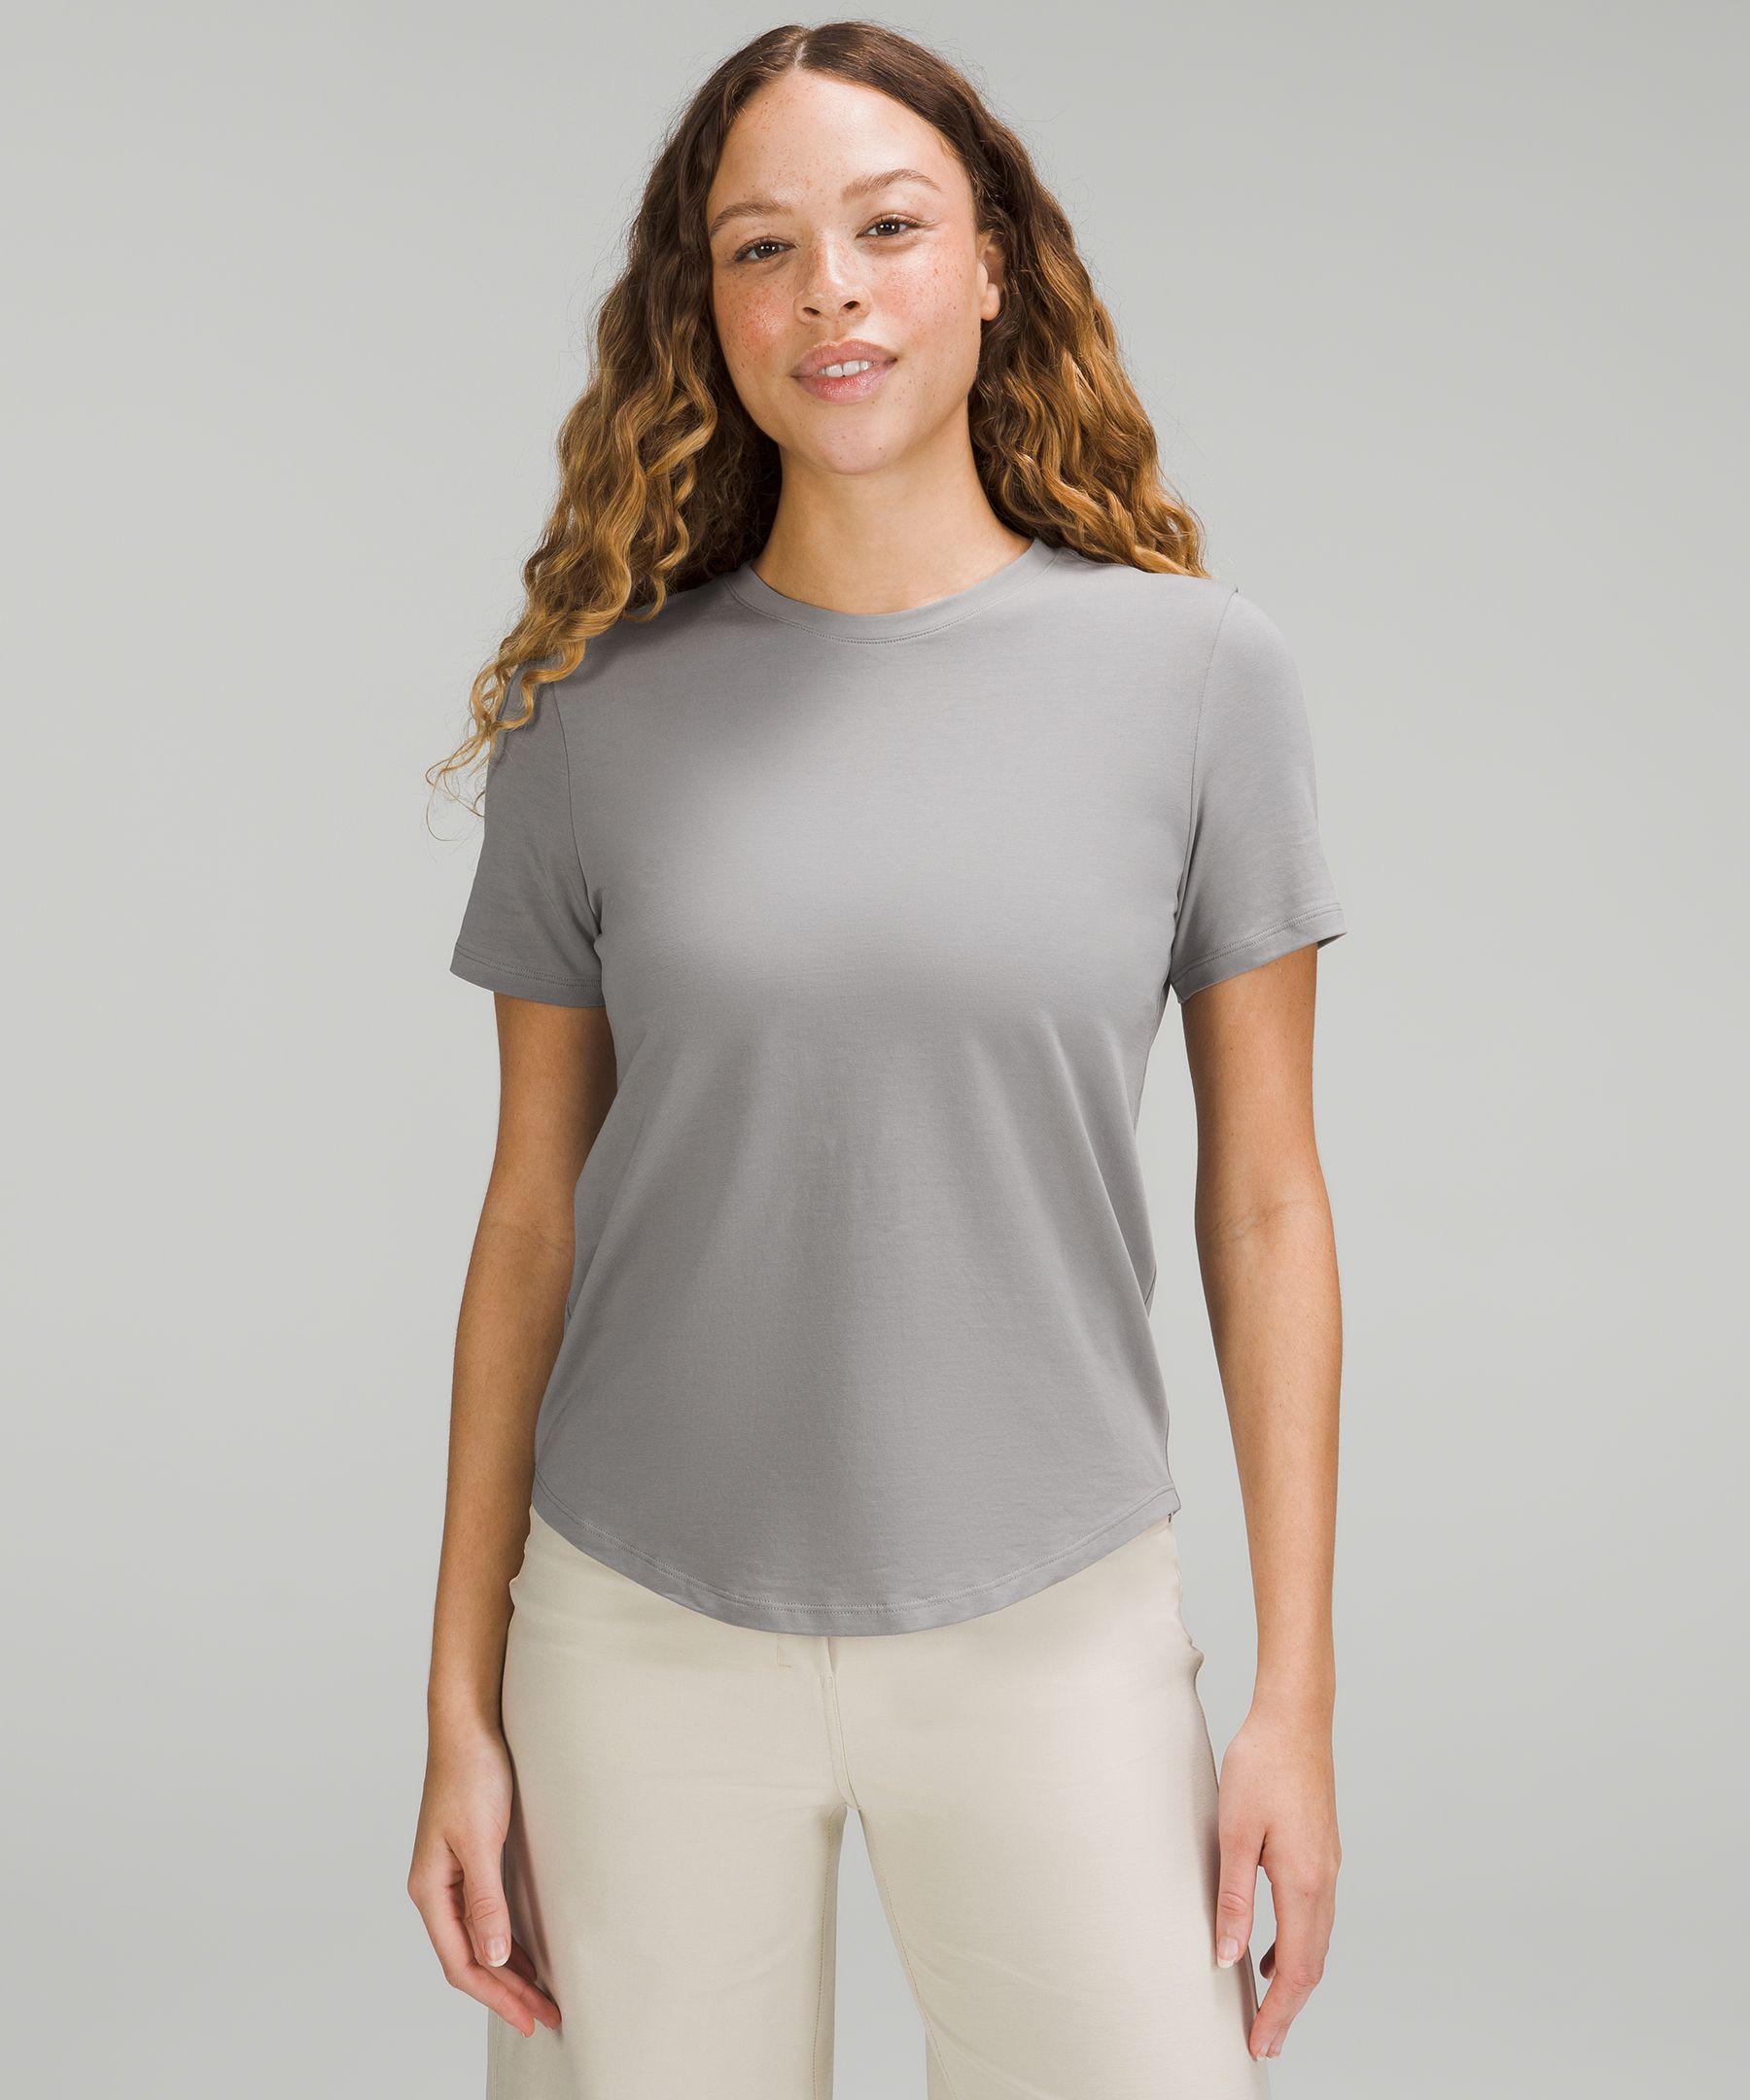 Storm T-shirt Gray S WOMEN FASHION Shirts & T-shirts Sports discount 98% 